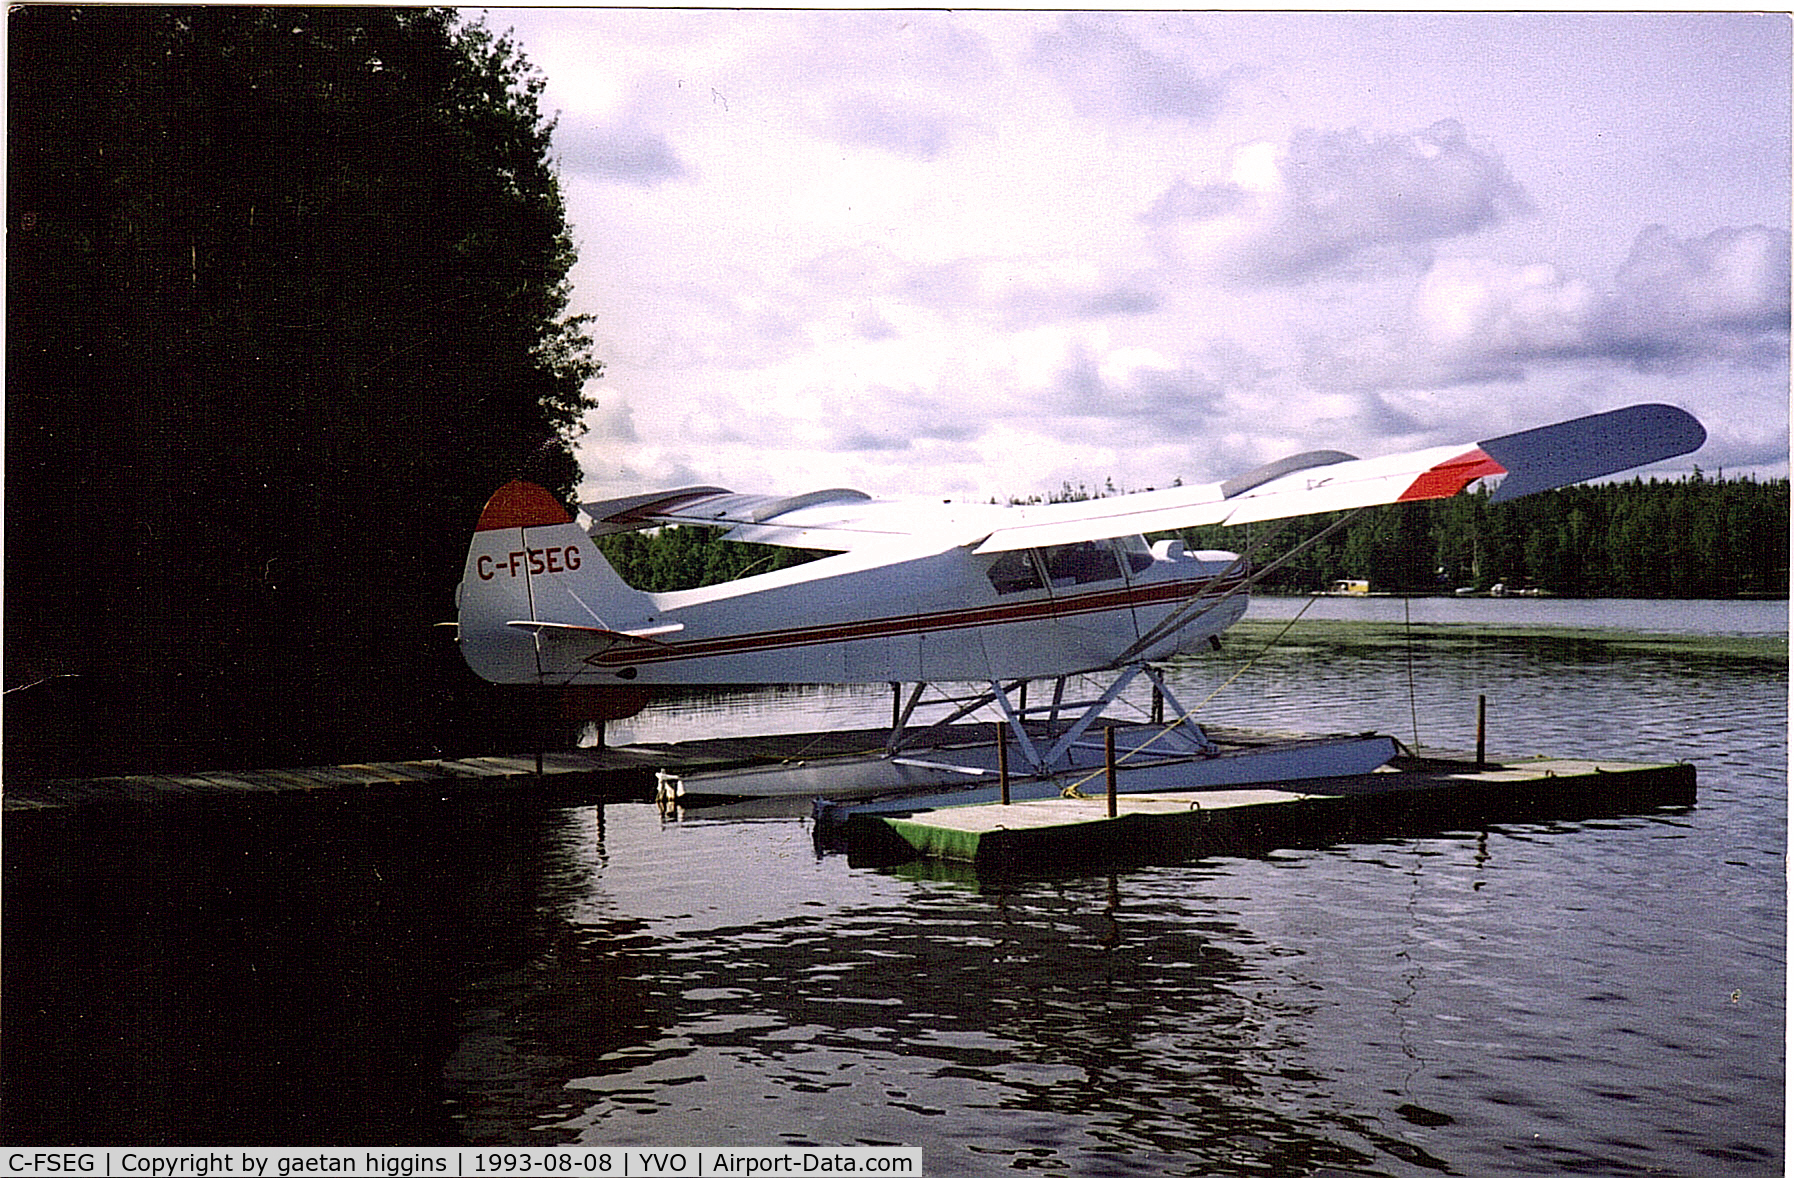 C-FSEG, 1992 Wag-Aero Super Tri-Pacer XI C/N 003, super tripacer